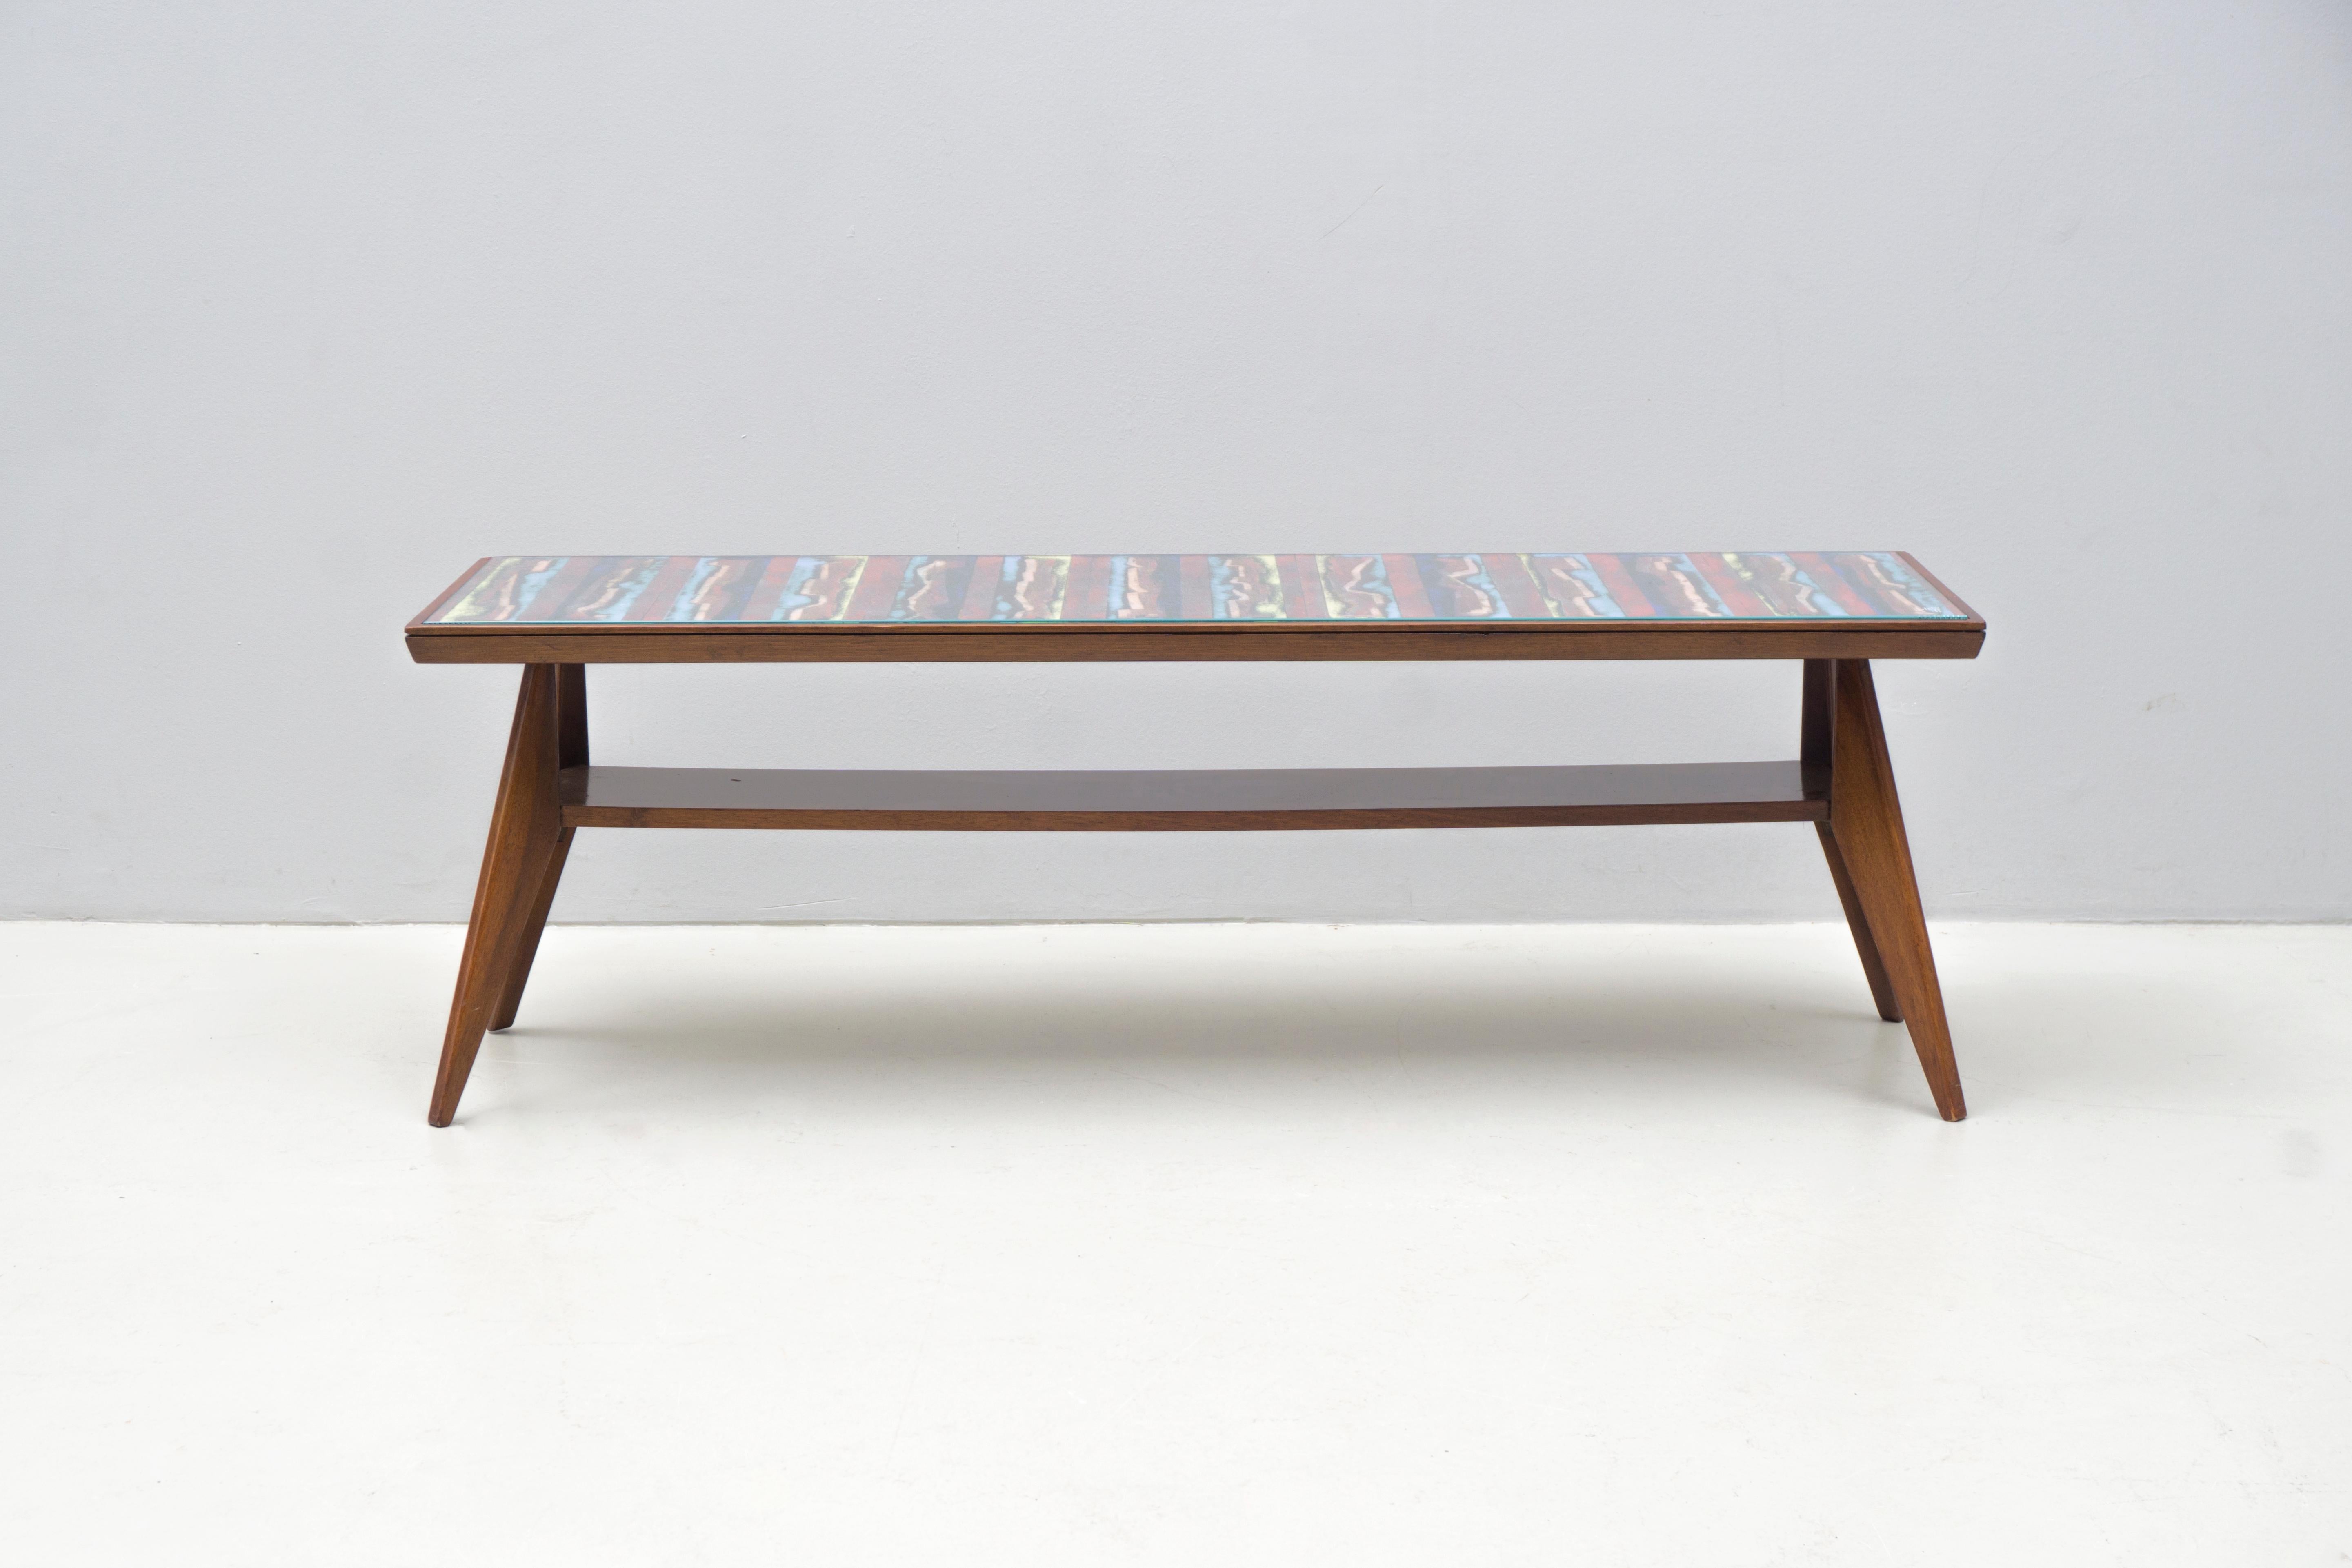 Dieser Tisch ist ein Einzelstück, das von Sergio Santi/VIGNA NOUVA FIRENZE in Florenz/Italien um 1950 geschaffen wurde.

Das Atelier VIGNA NUOVA war auf die Herstellung von Objekten aus Emaille spezialisiert - Inneneinrichtungen aus diesem Atelier